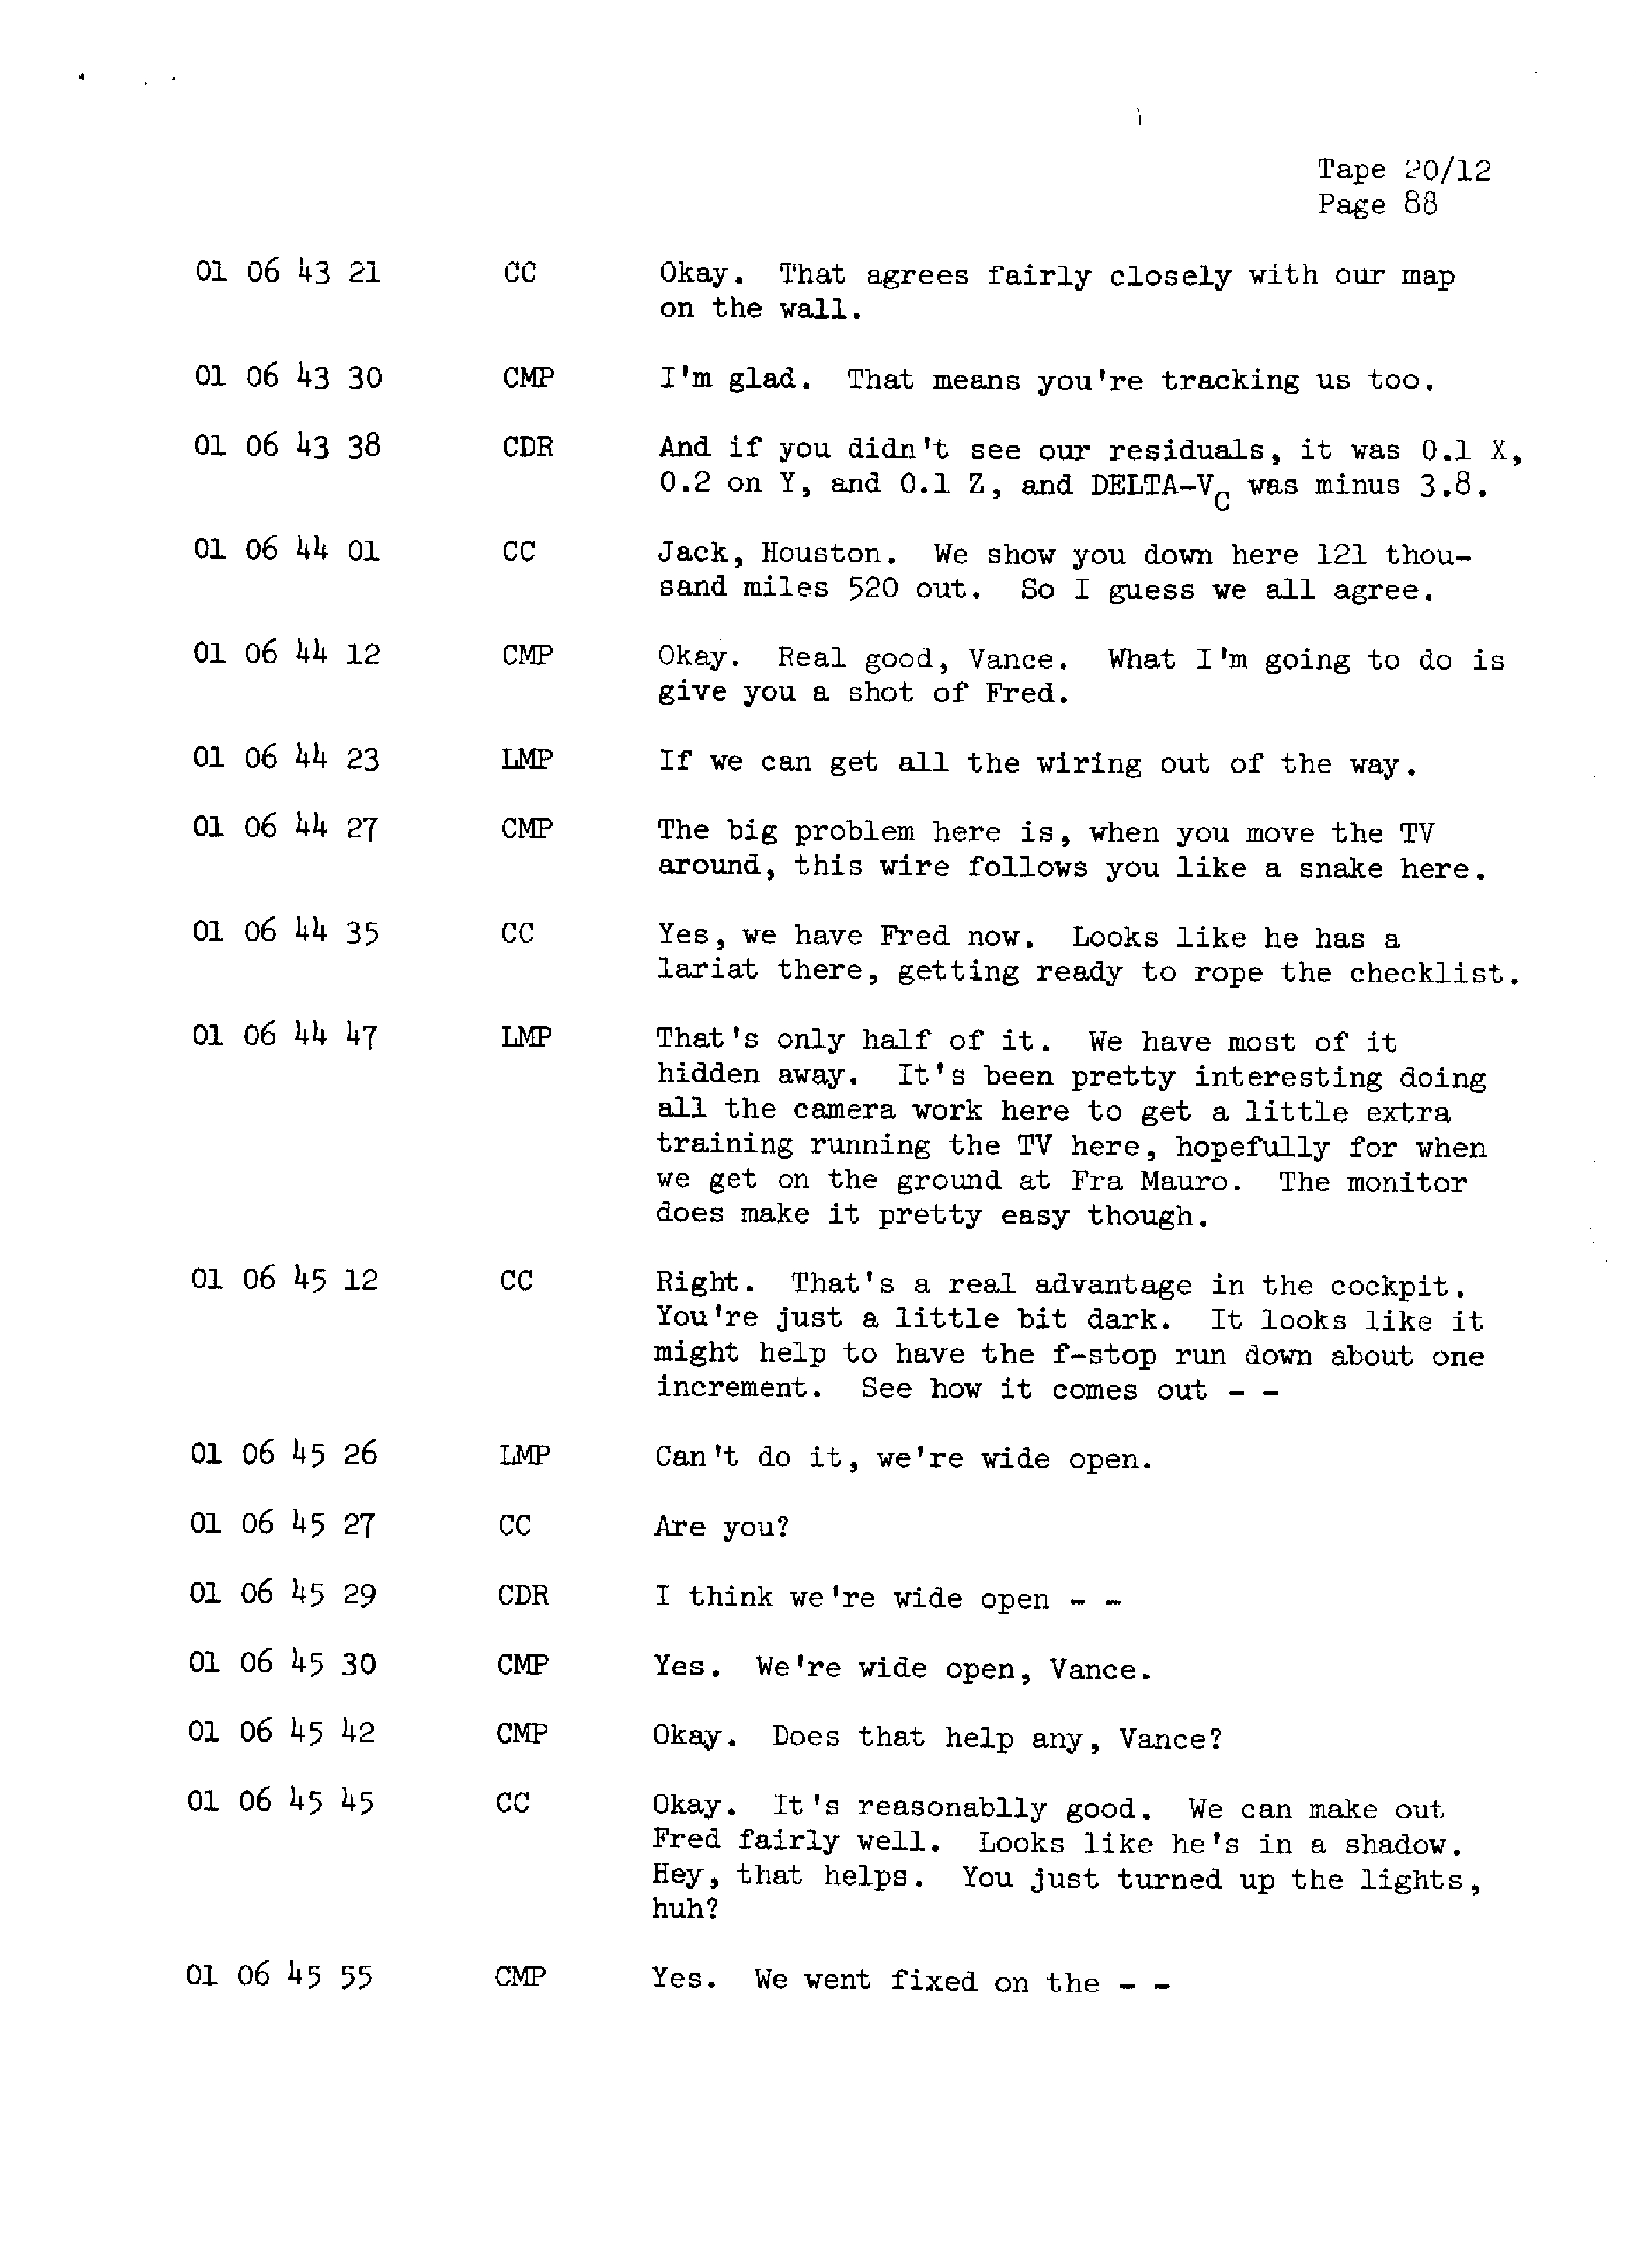 Page 95 of Apollo 13’s original transcript